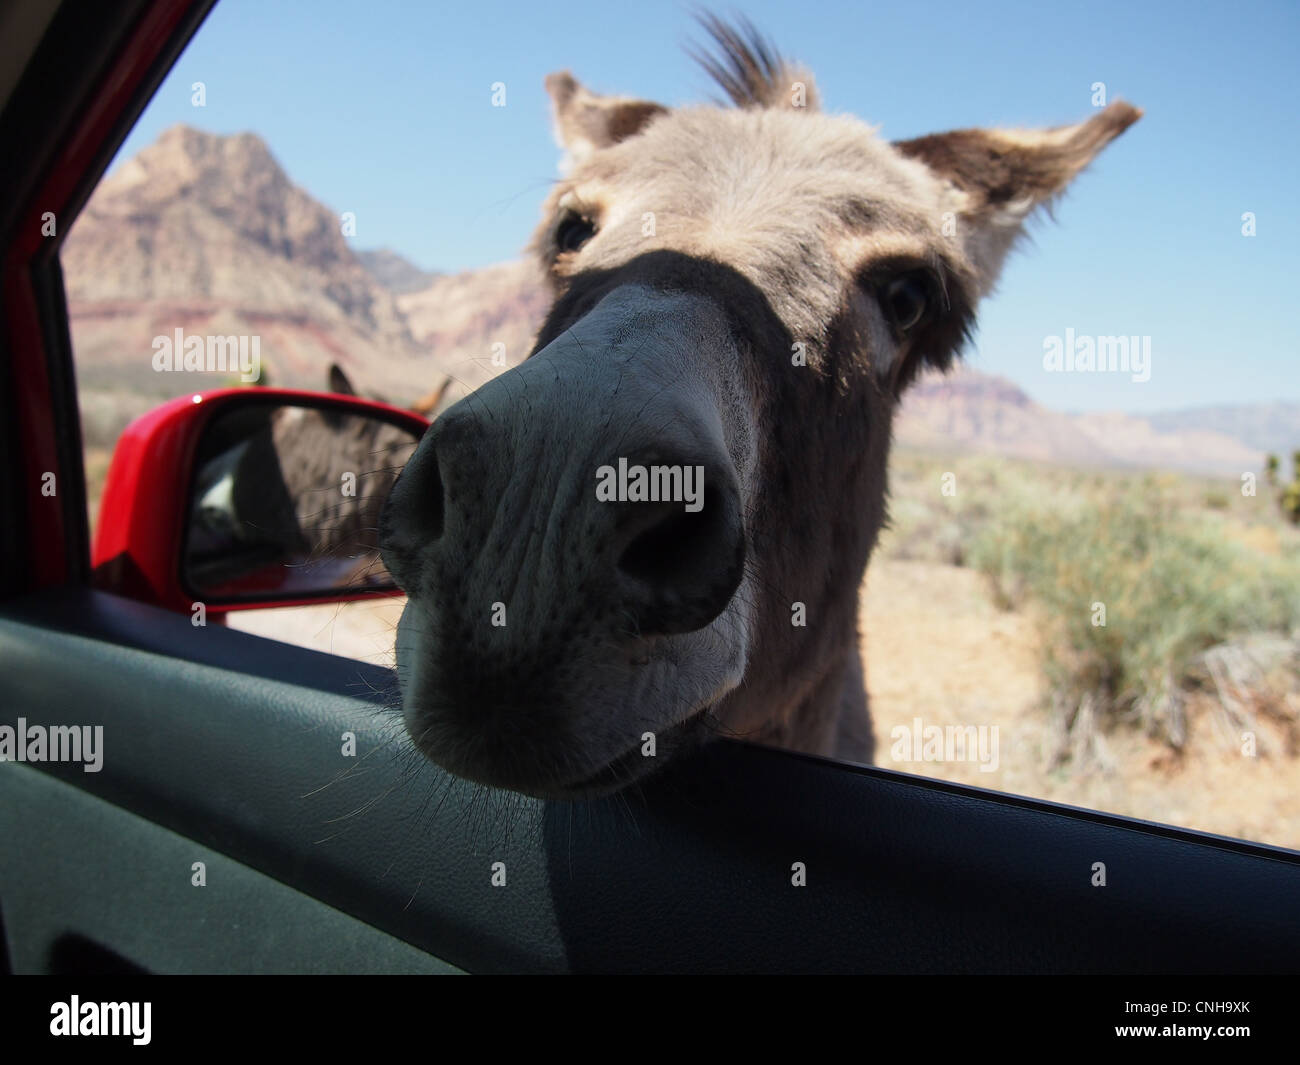 Burro piquer du nez de l'âne en voiture Banque D'Images